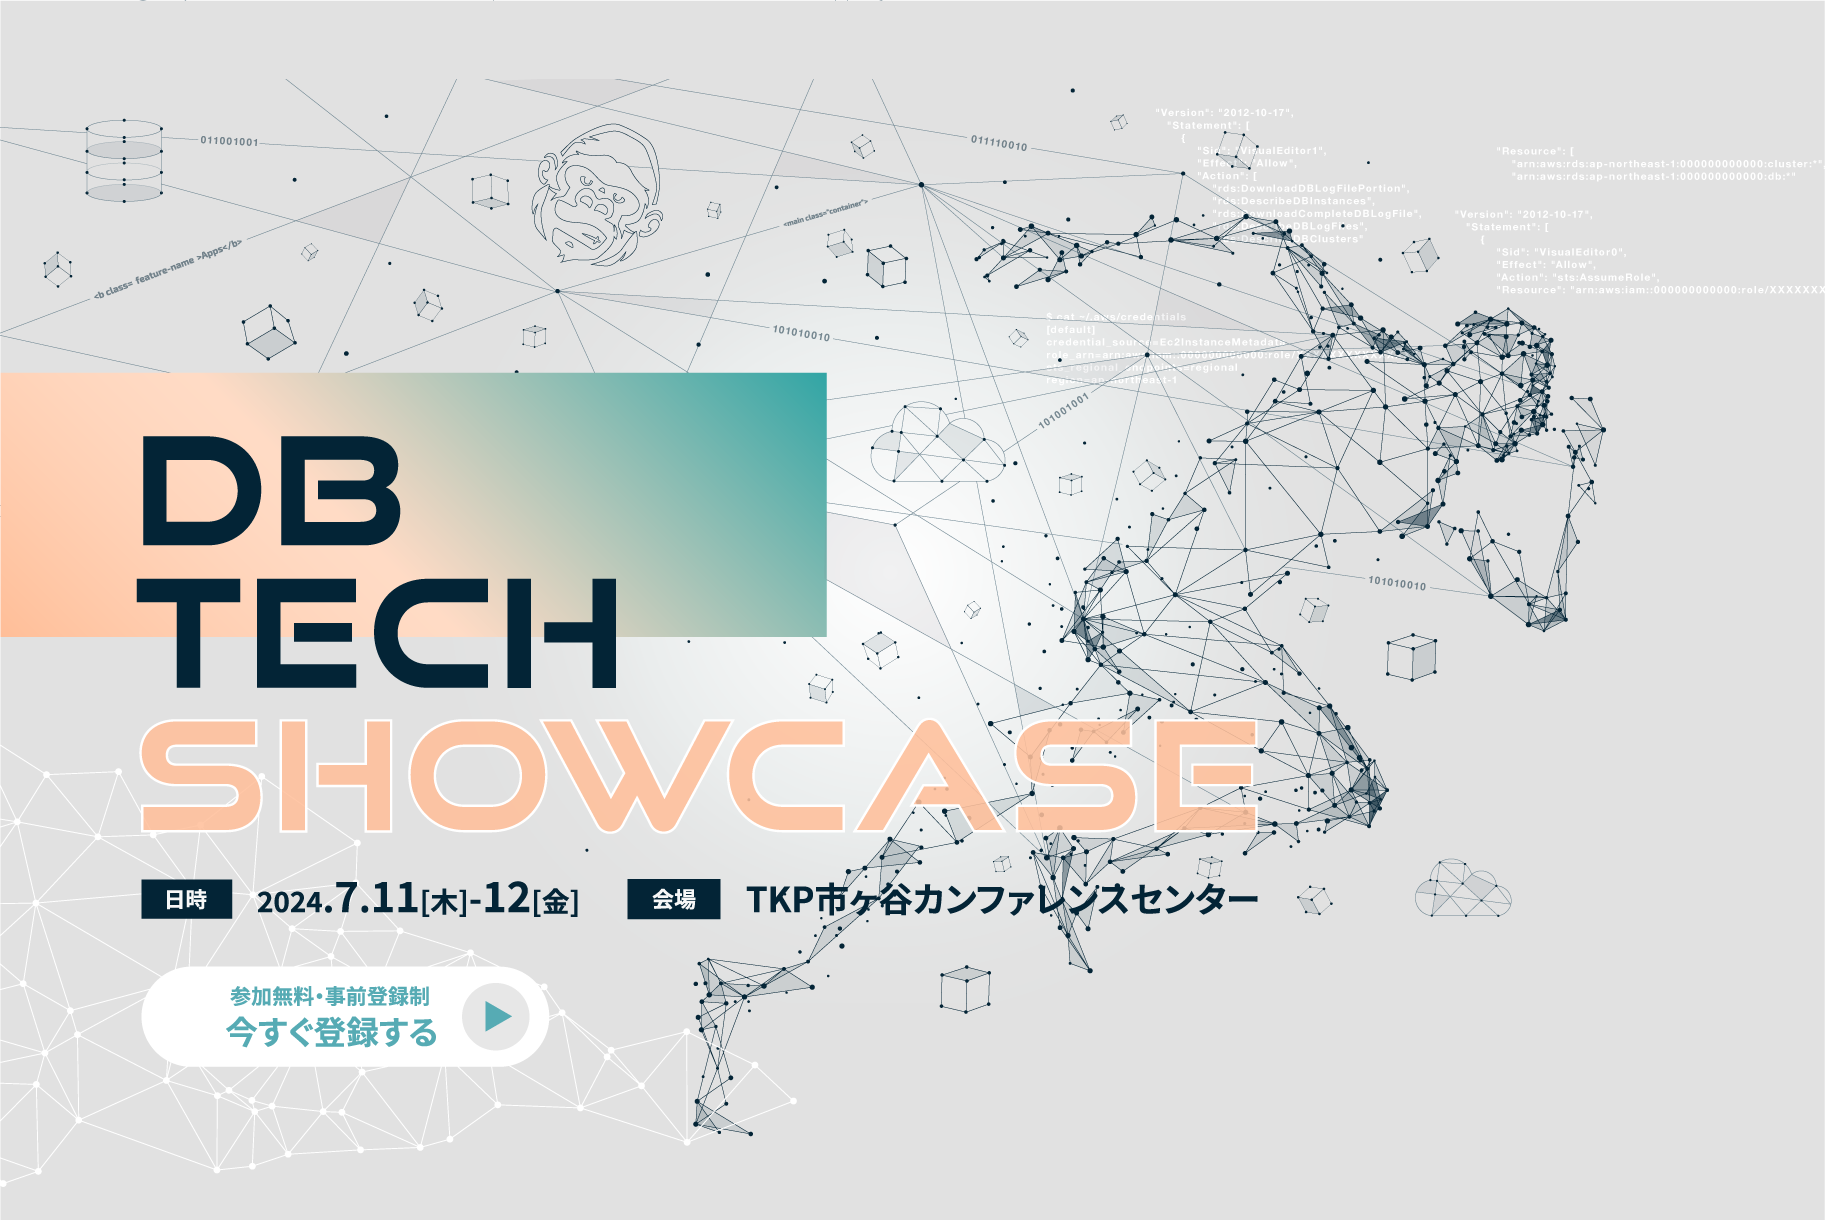 db tech showcase 2024